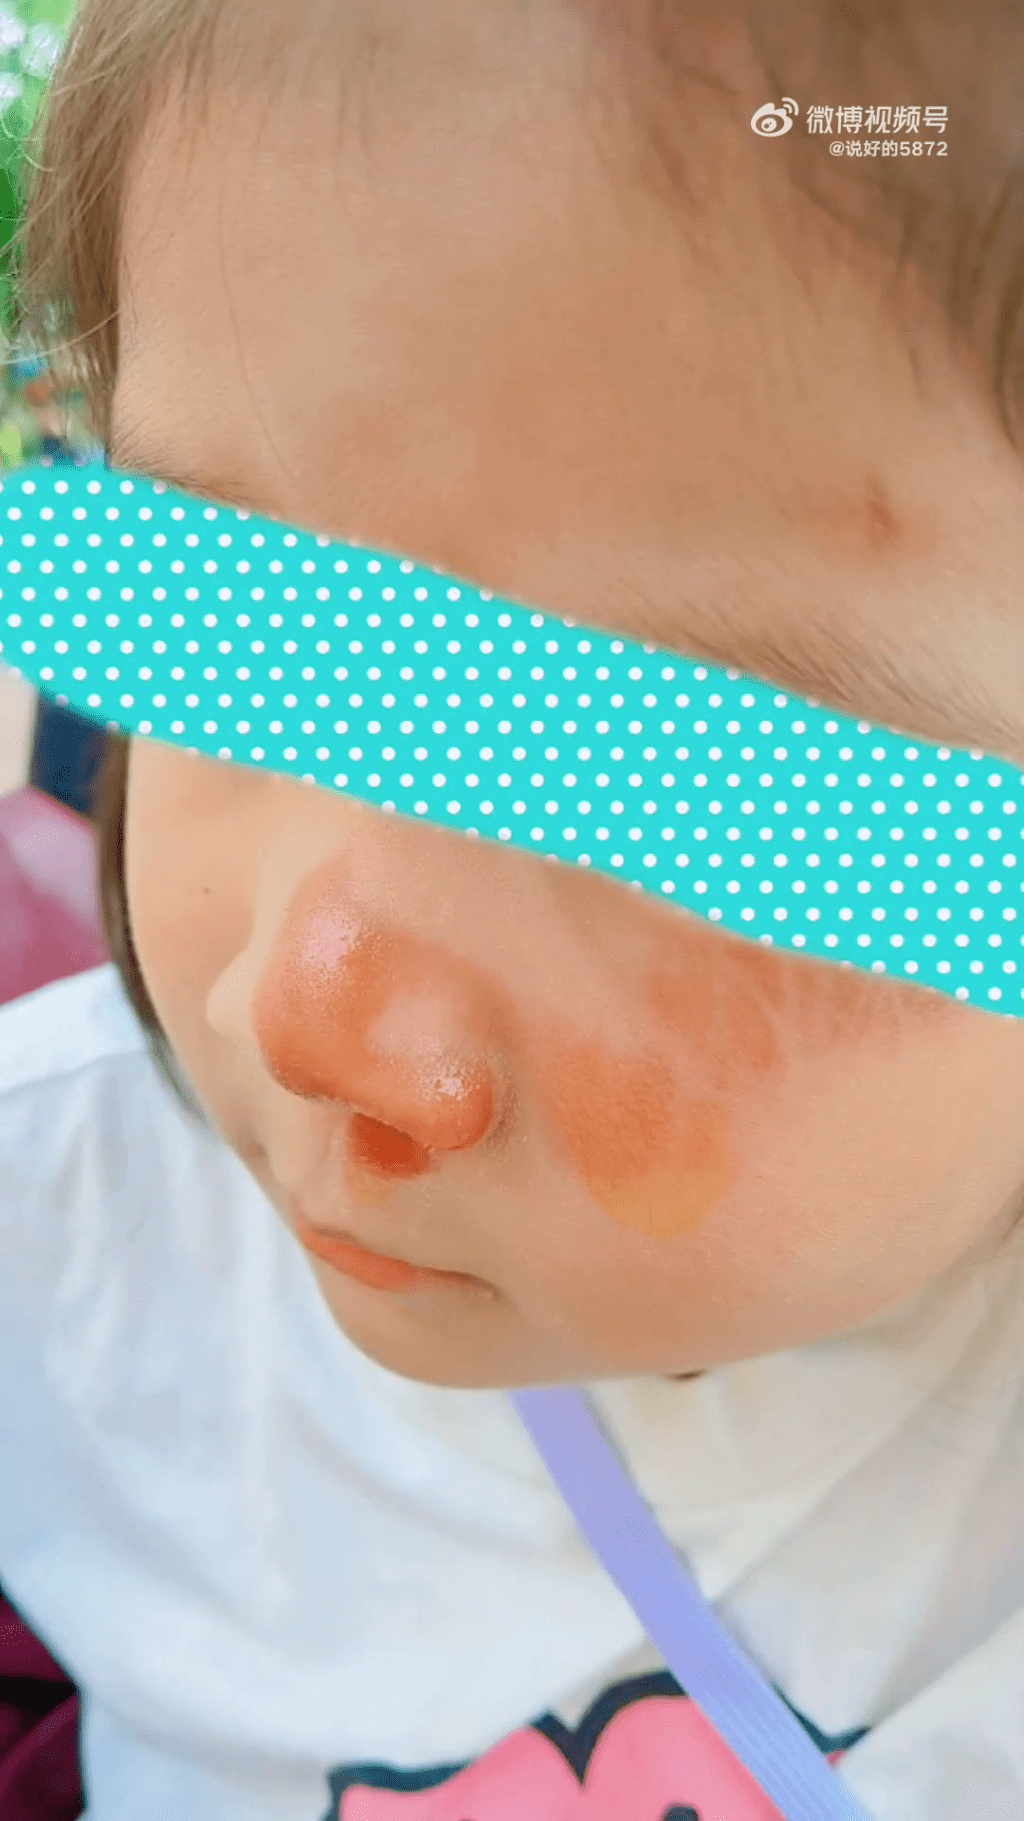 5歲女童在上海迪士尼排隊時被插隊黃牛撞飛臉部受傷，恐留疤痕。網圖